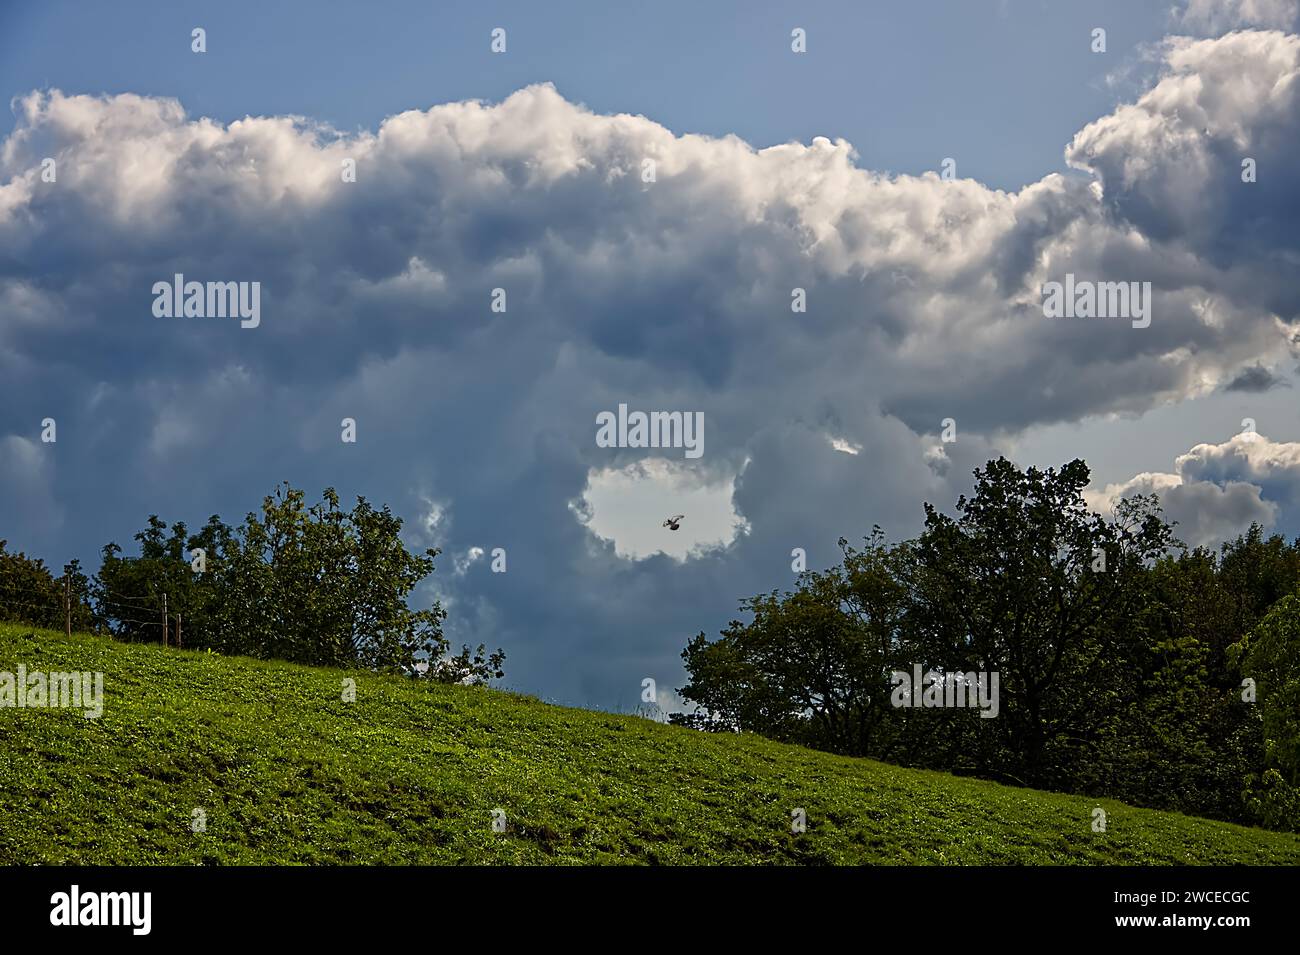 Landschaft mit bewölktem Himmel und Feldern. Die Wolken haben in der Mitte ein Loch geformt und schaffen eine dramatische und fesselnde Szene Stockfoto